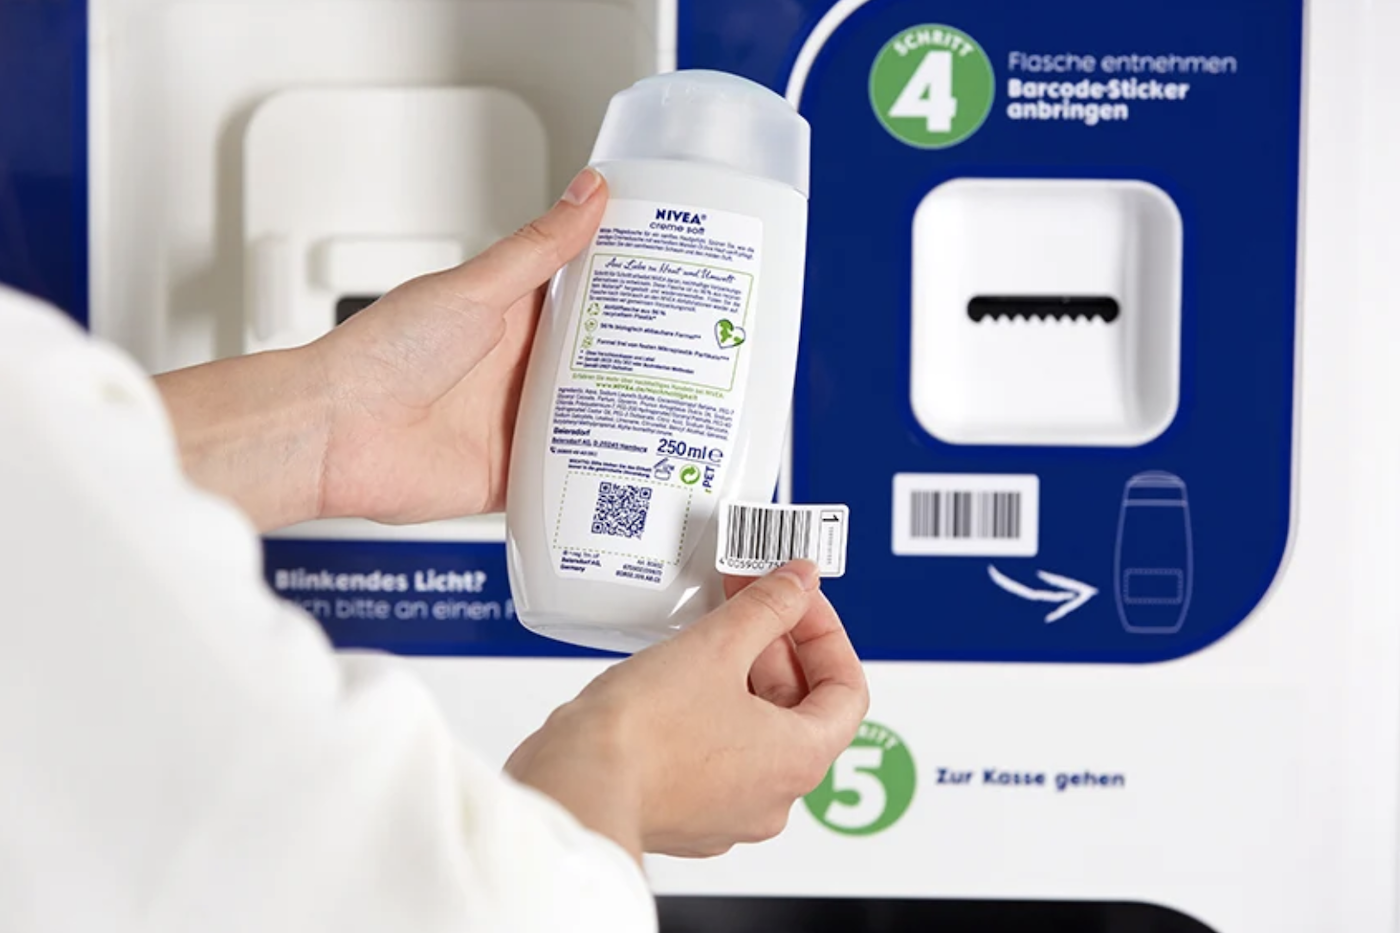 Pour limiter les emballages, Nivea permet de recharger son gel douche en magasin